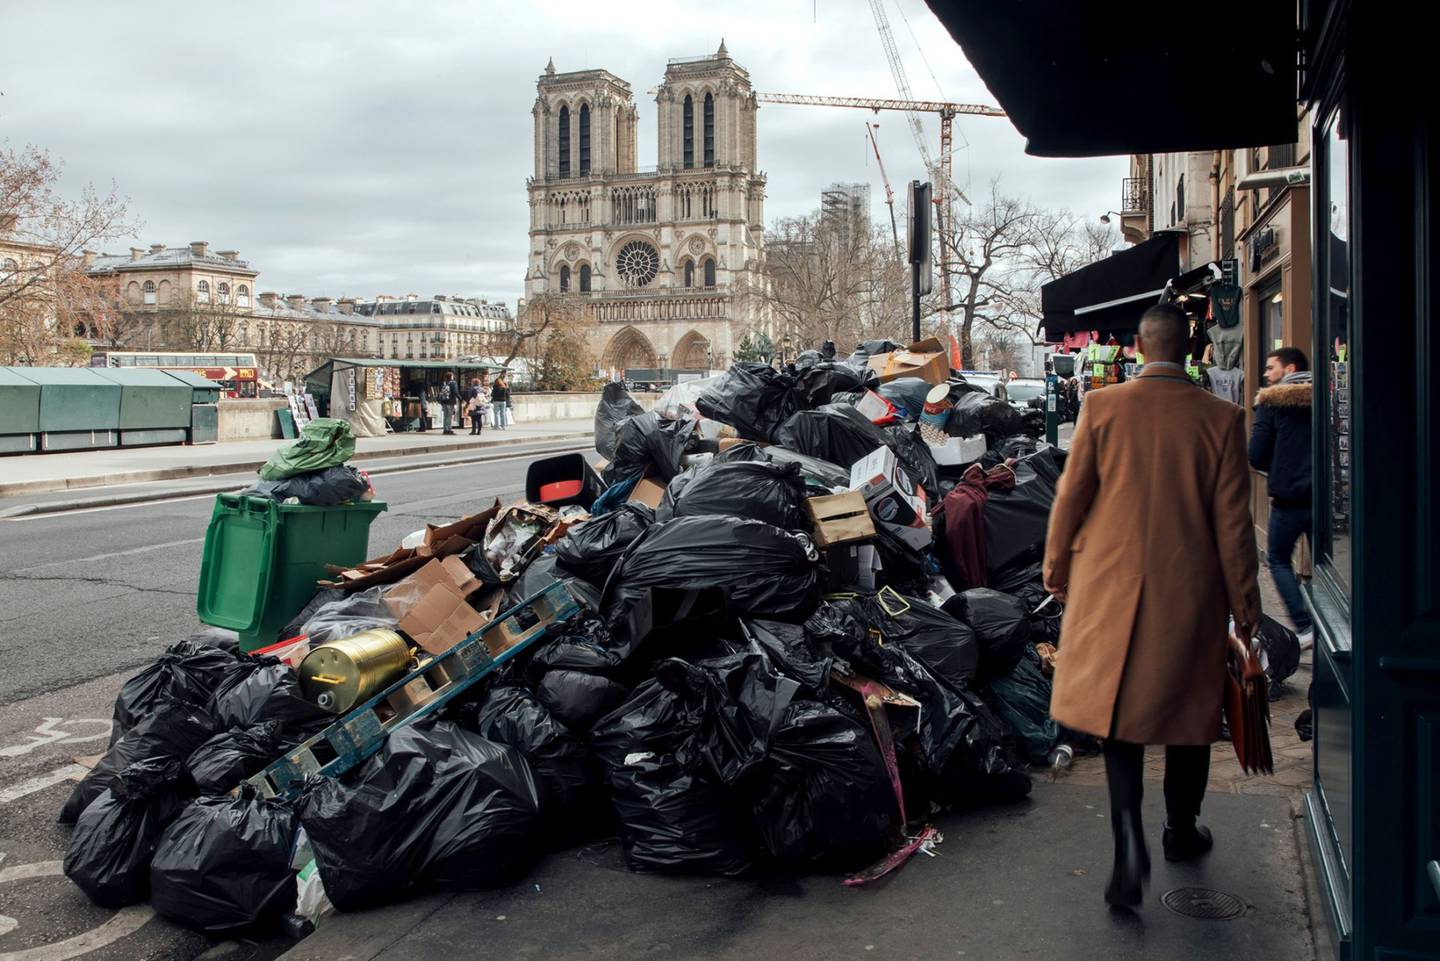 Imagen de basura amontonada en Parísdfd